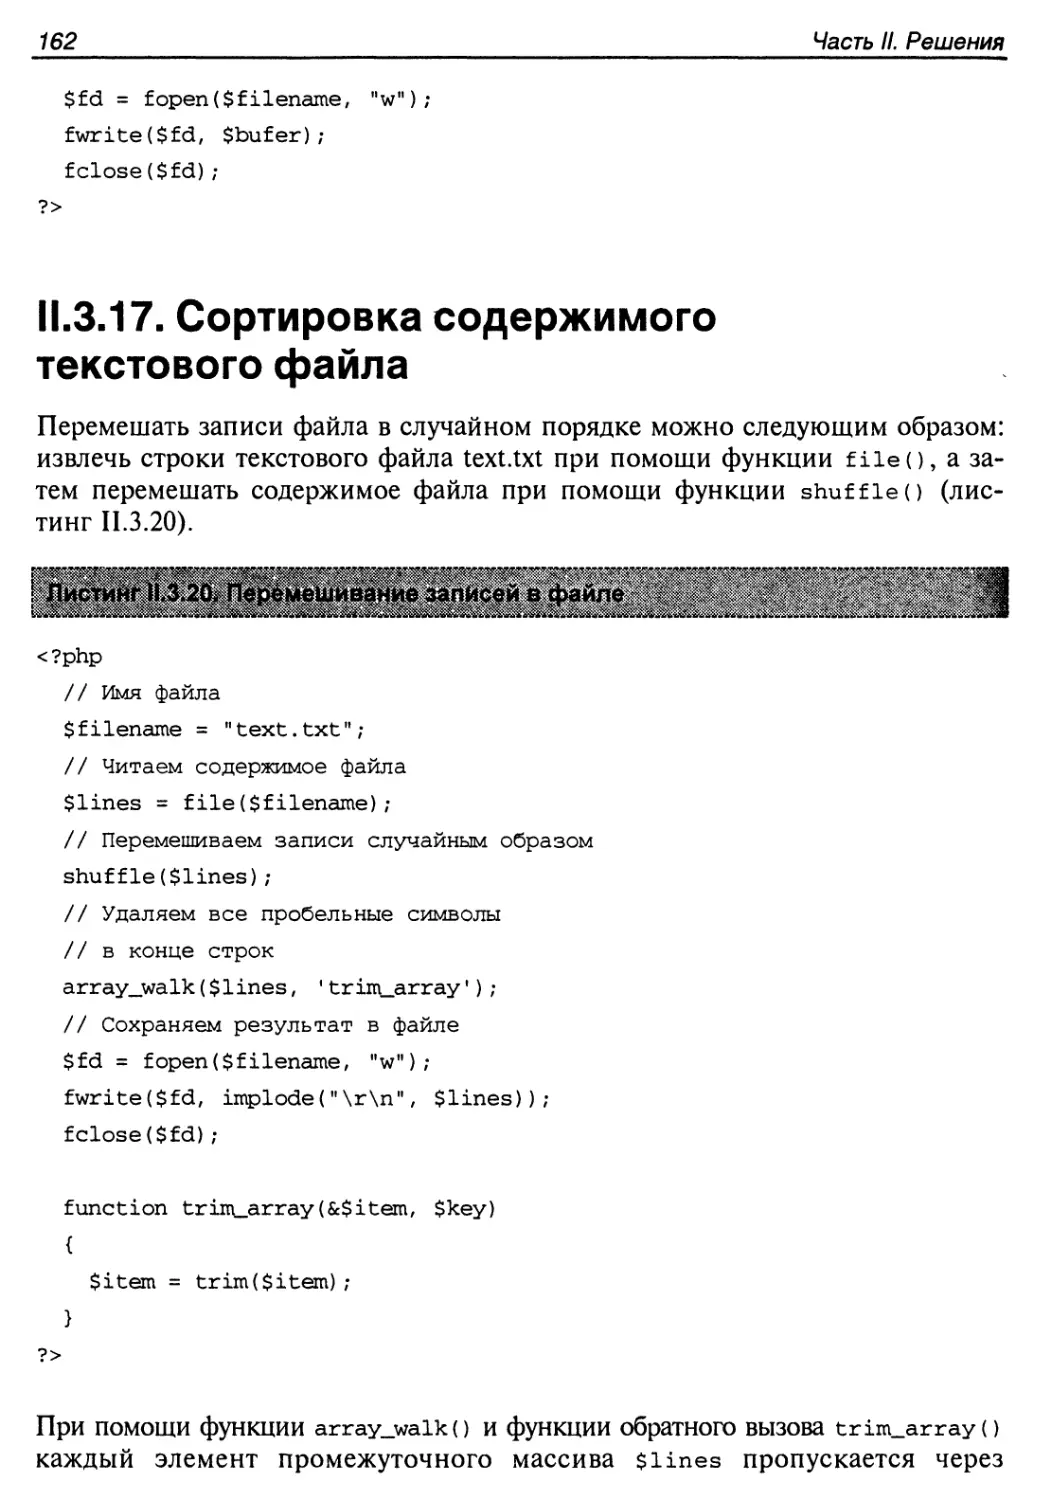 II.3.17. Сортировка содержимого текстового файла